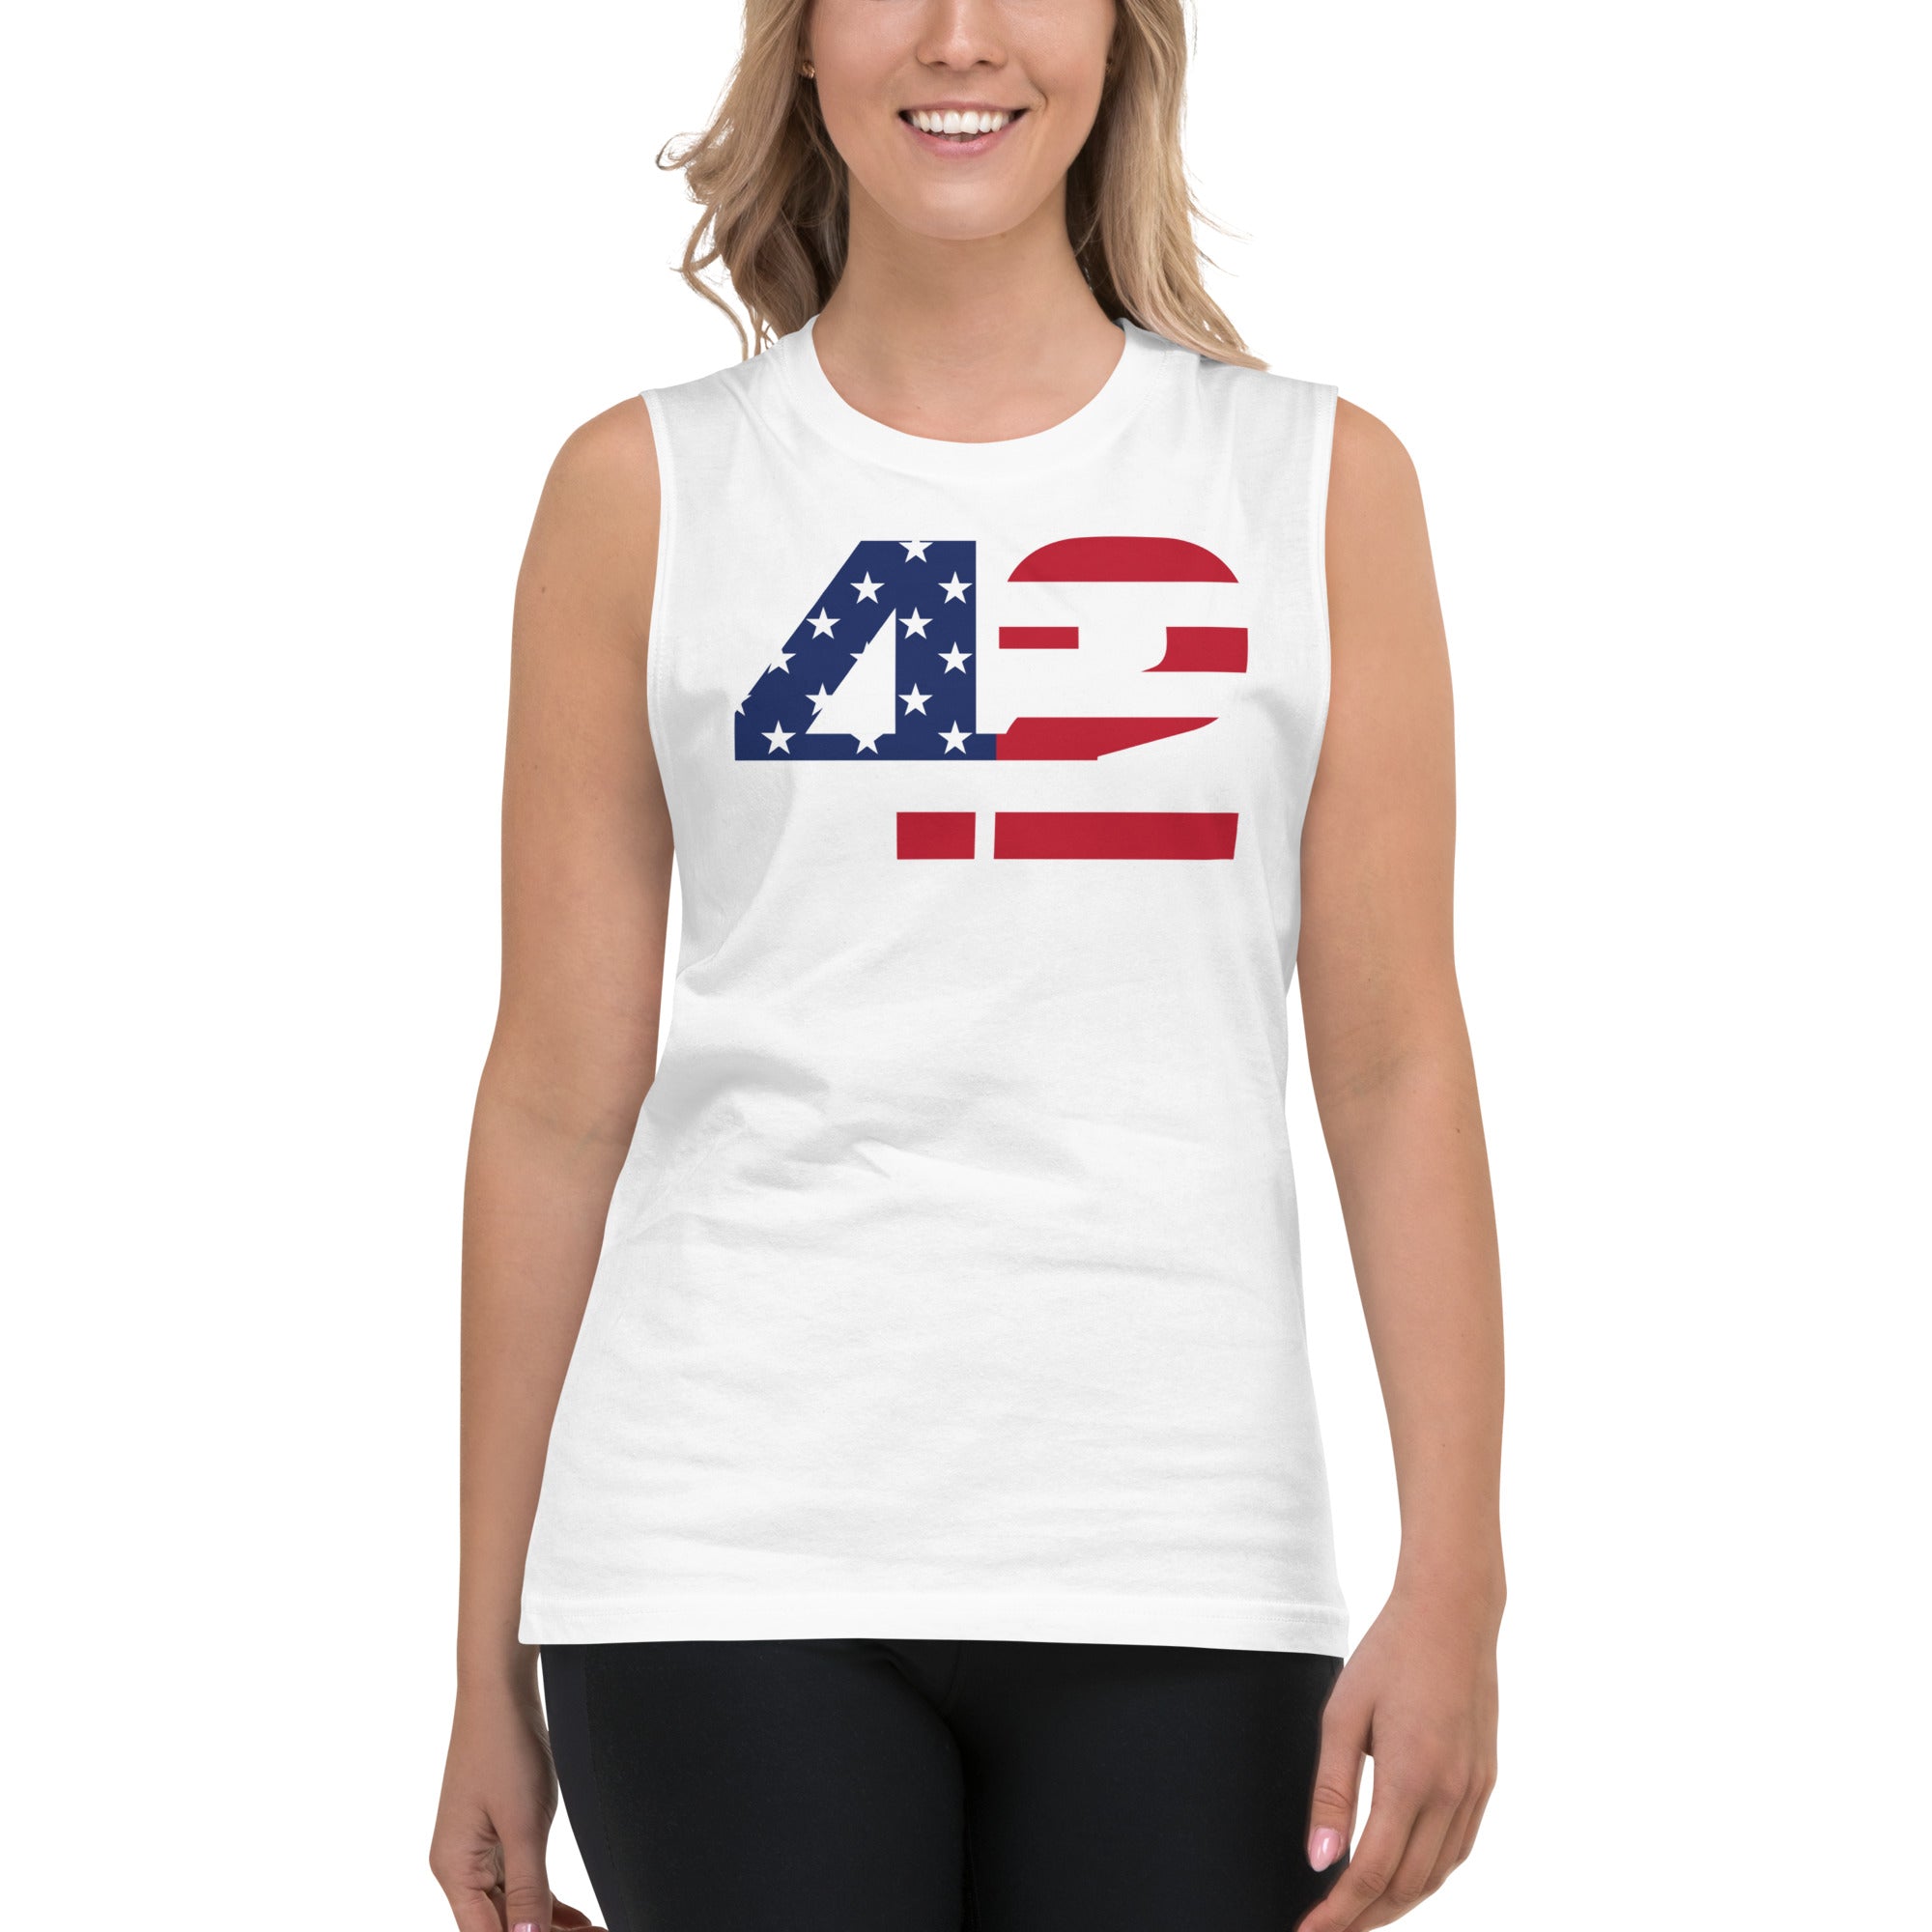 USA Muscle Shirt